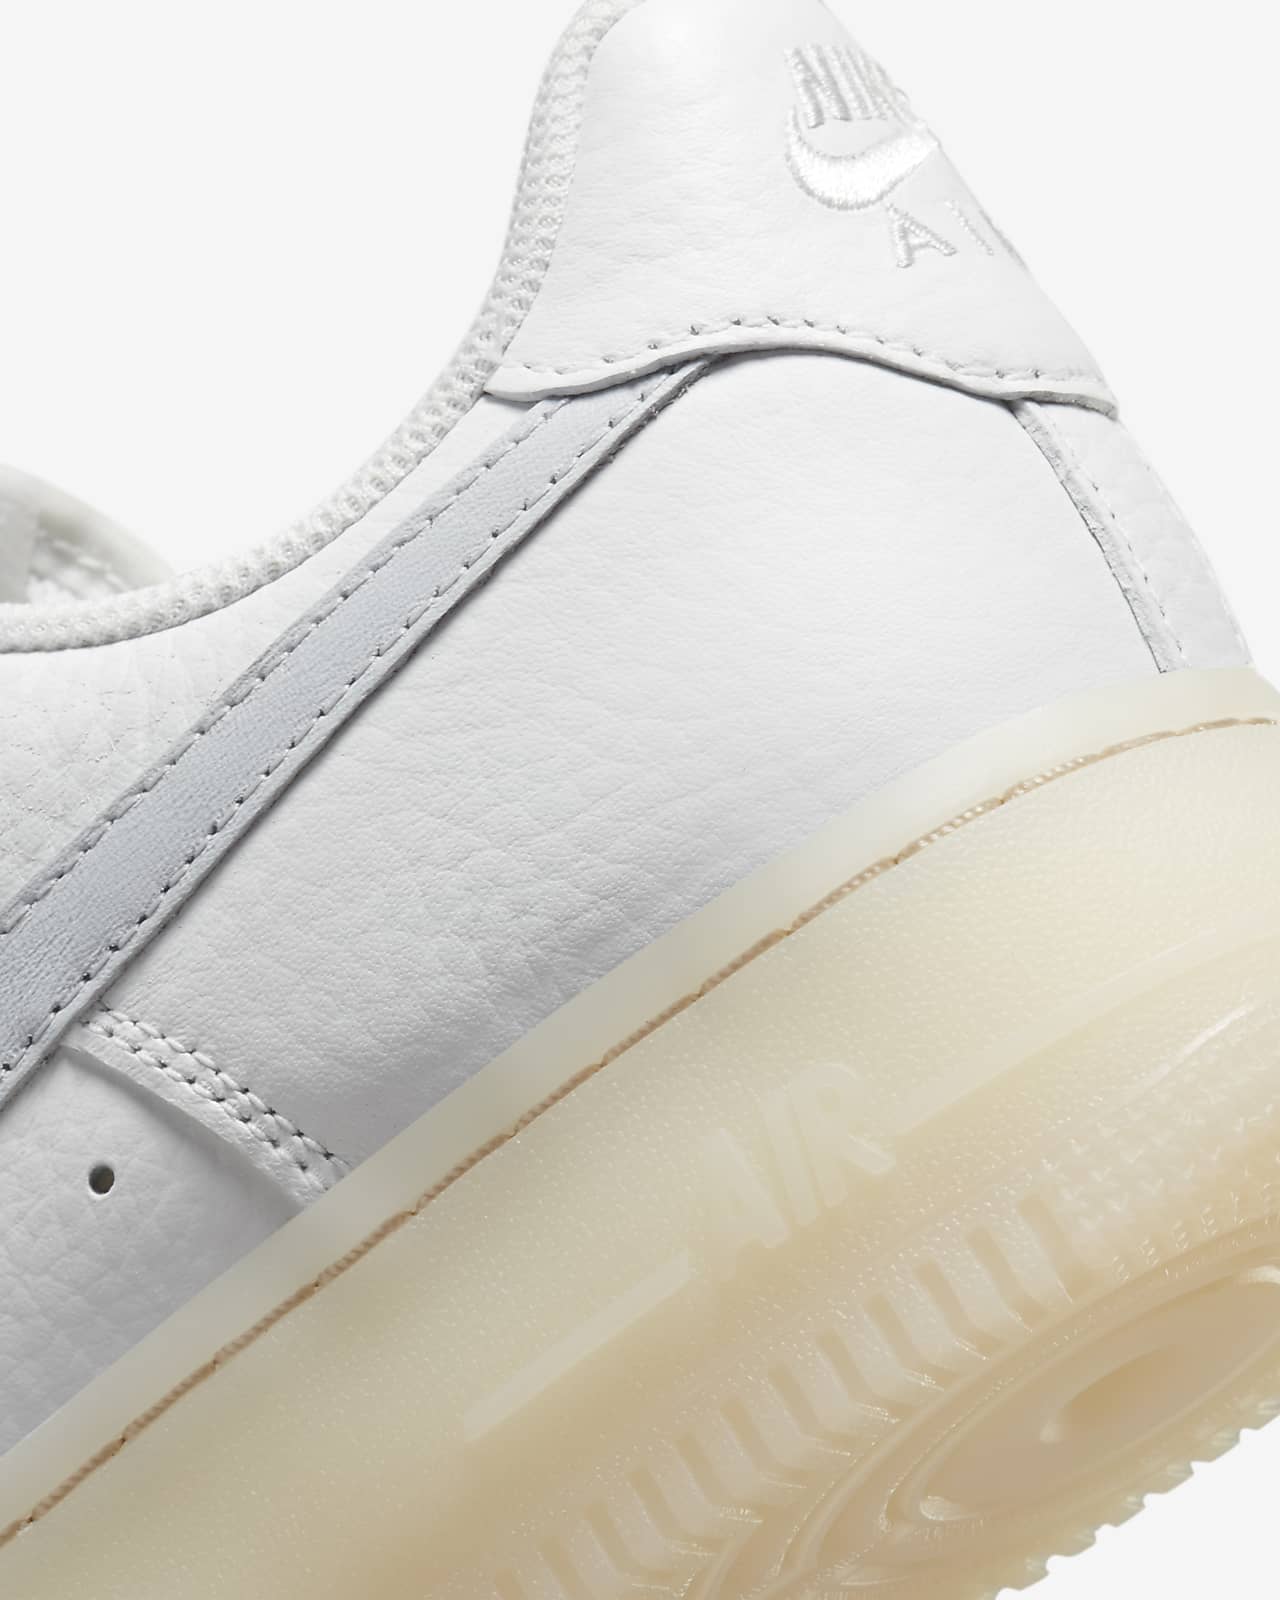 Nike Air Force 1 '07 - White/White-Gum Light Brown 8.5